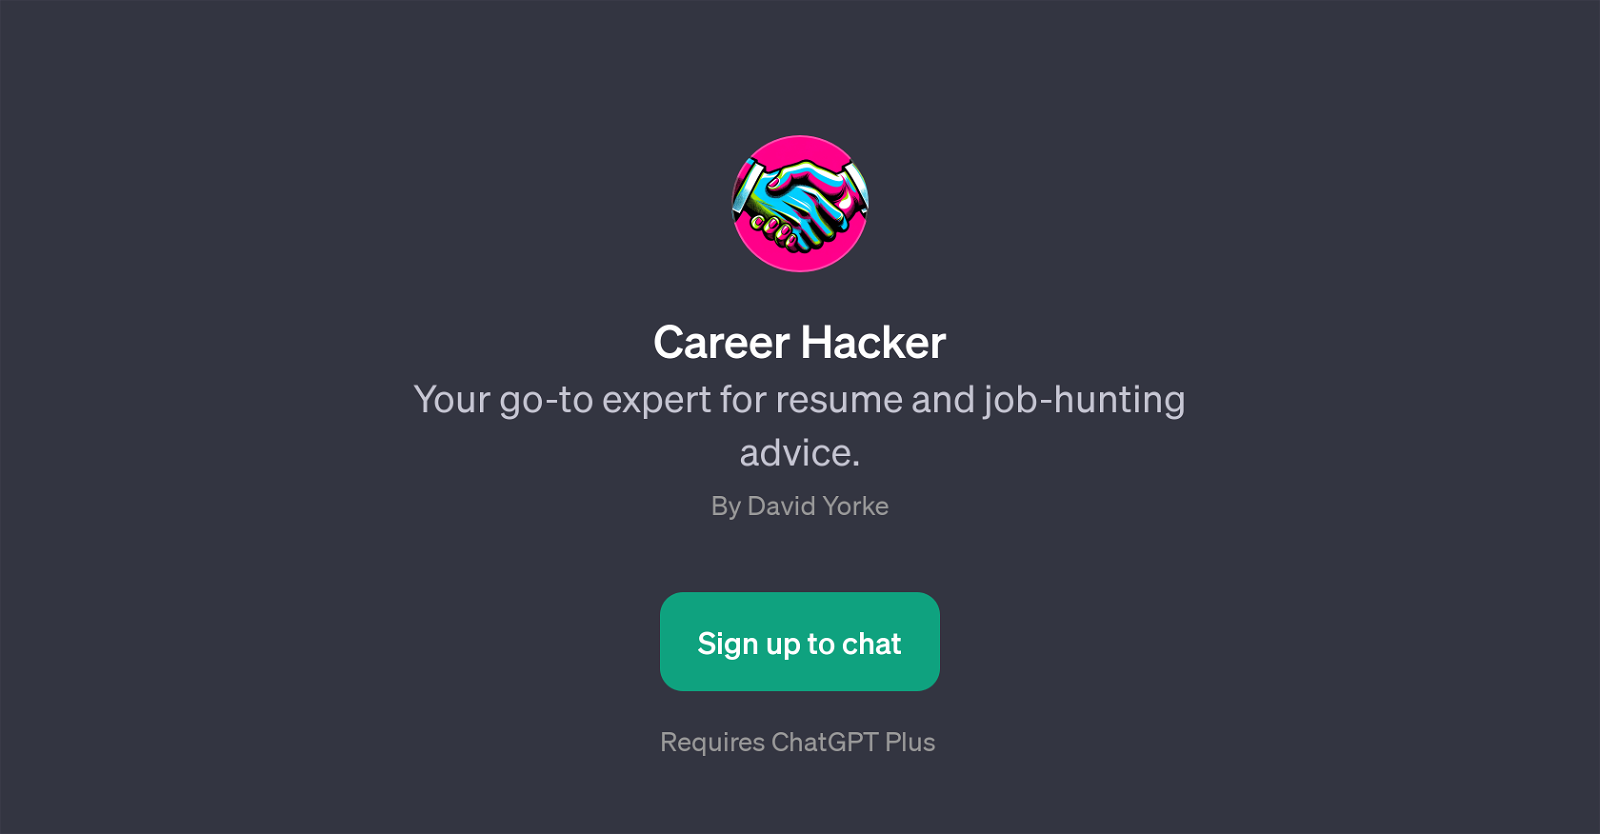 Career Hacker website